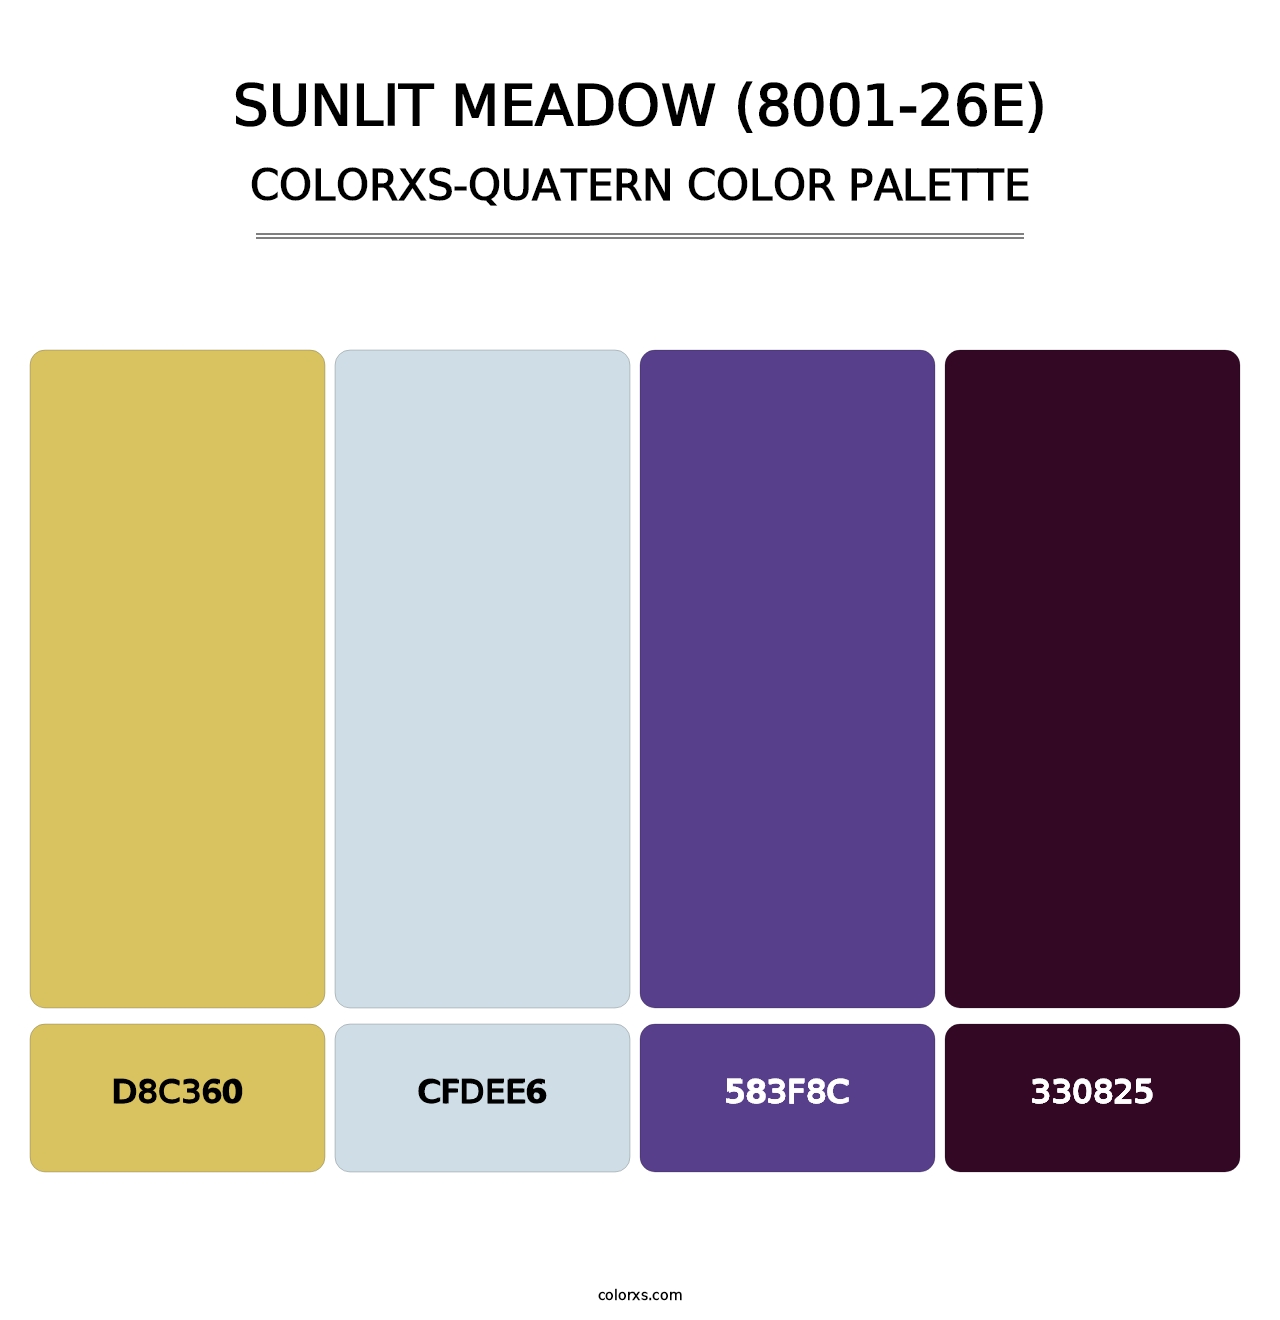 Sunlit Meadow (8001-26E) - Colorxs Quatern Palette